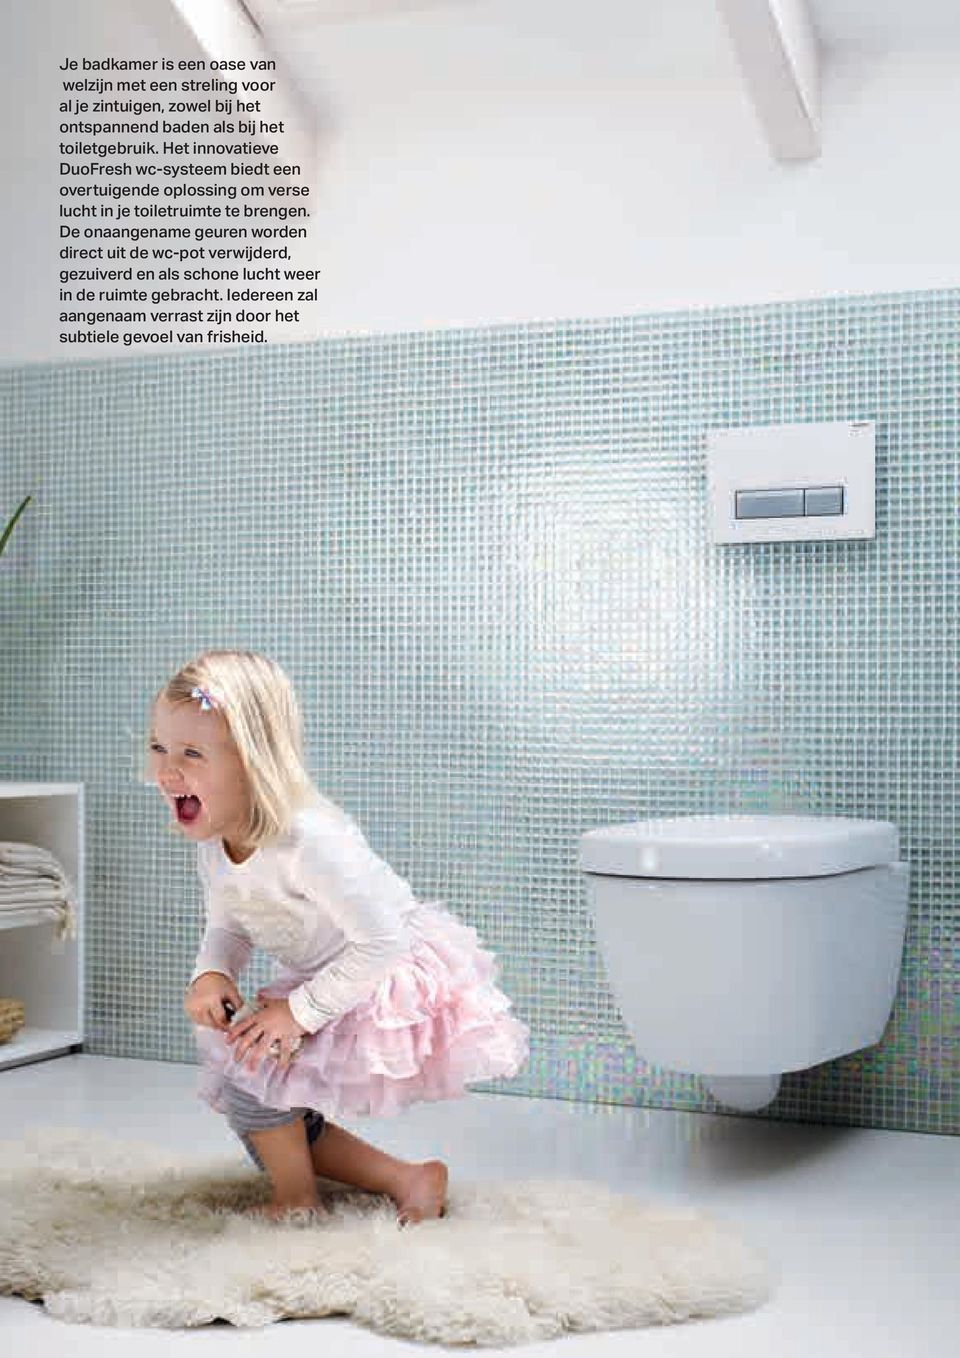 Het innovatieve DuoFresh wc-systeem biedt een overtuigende oplossing om verse lucht in je toiletruimte te